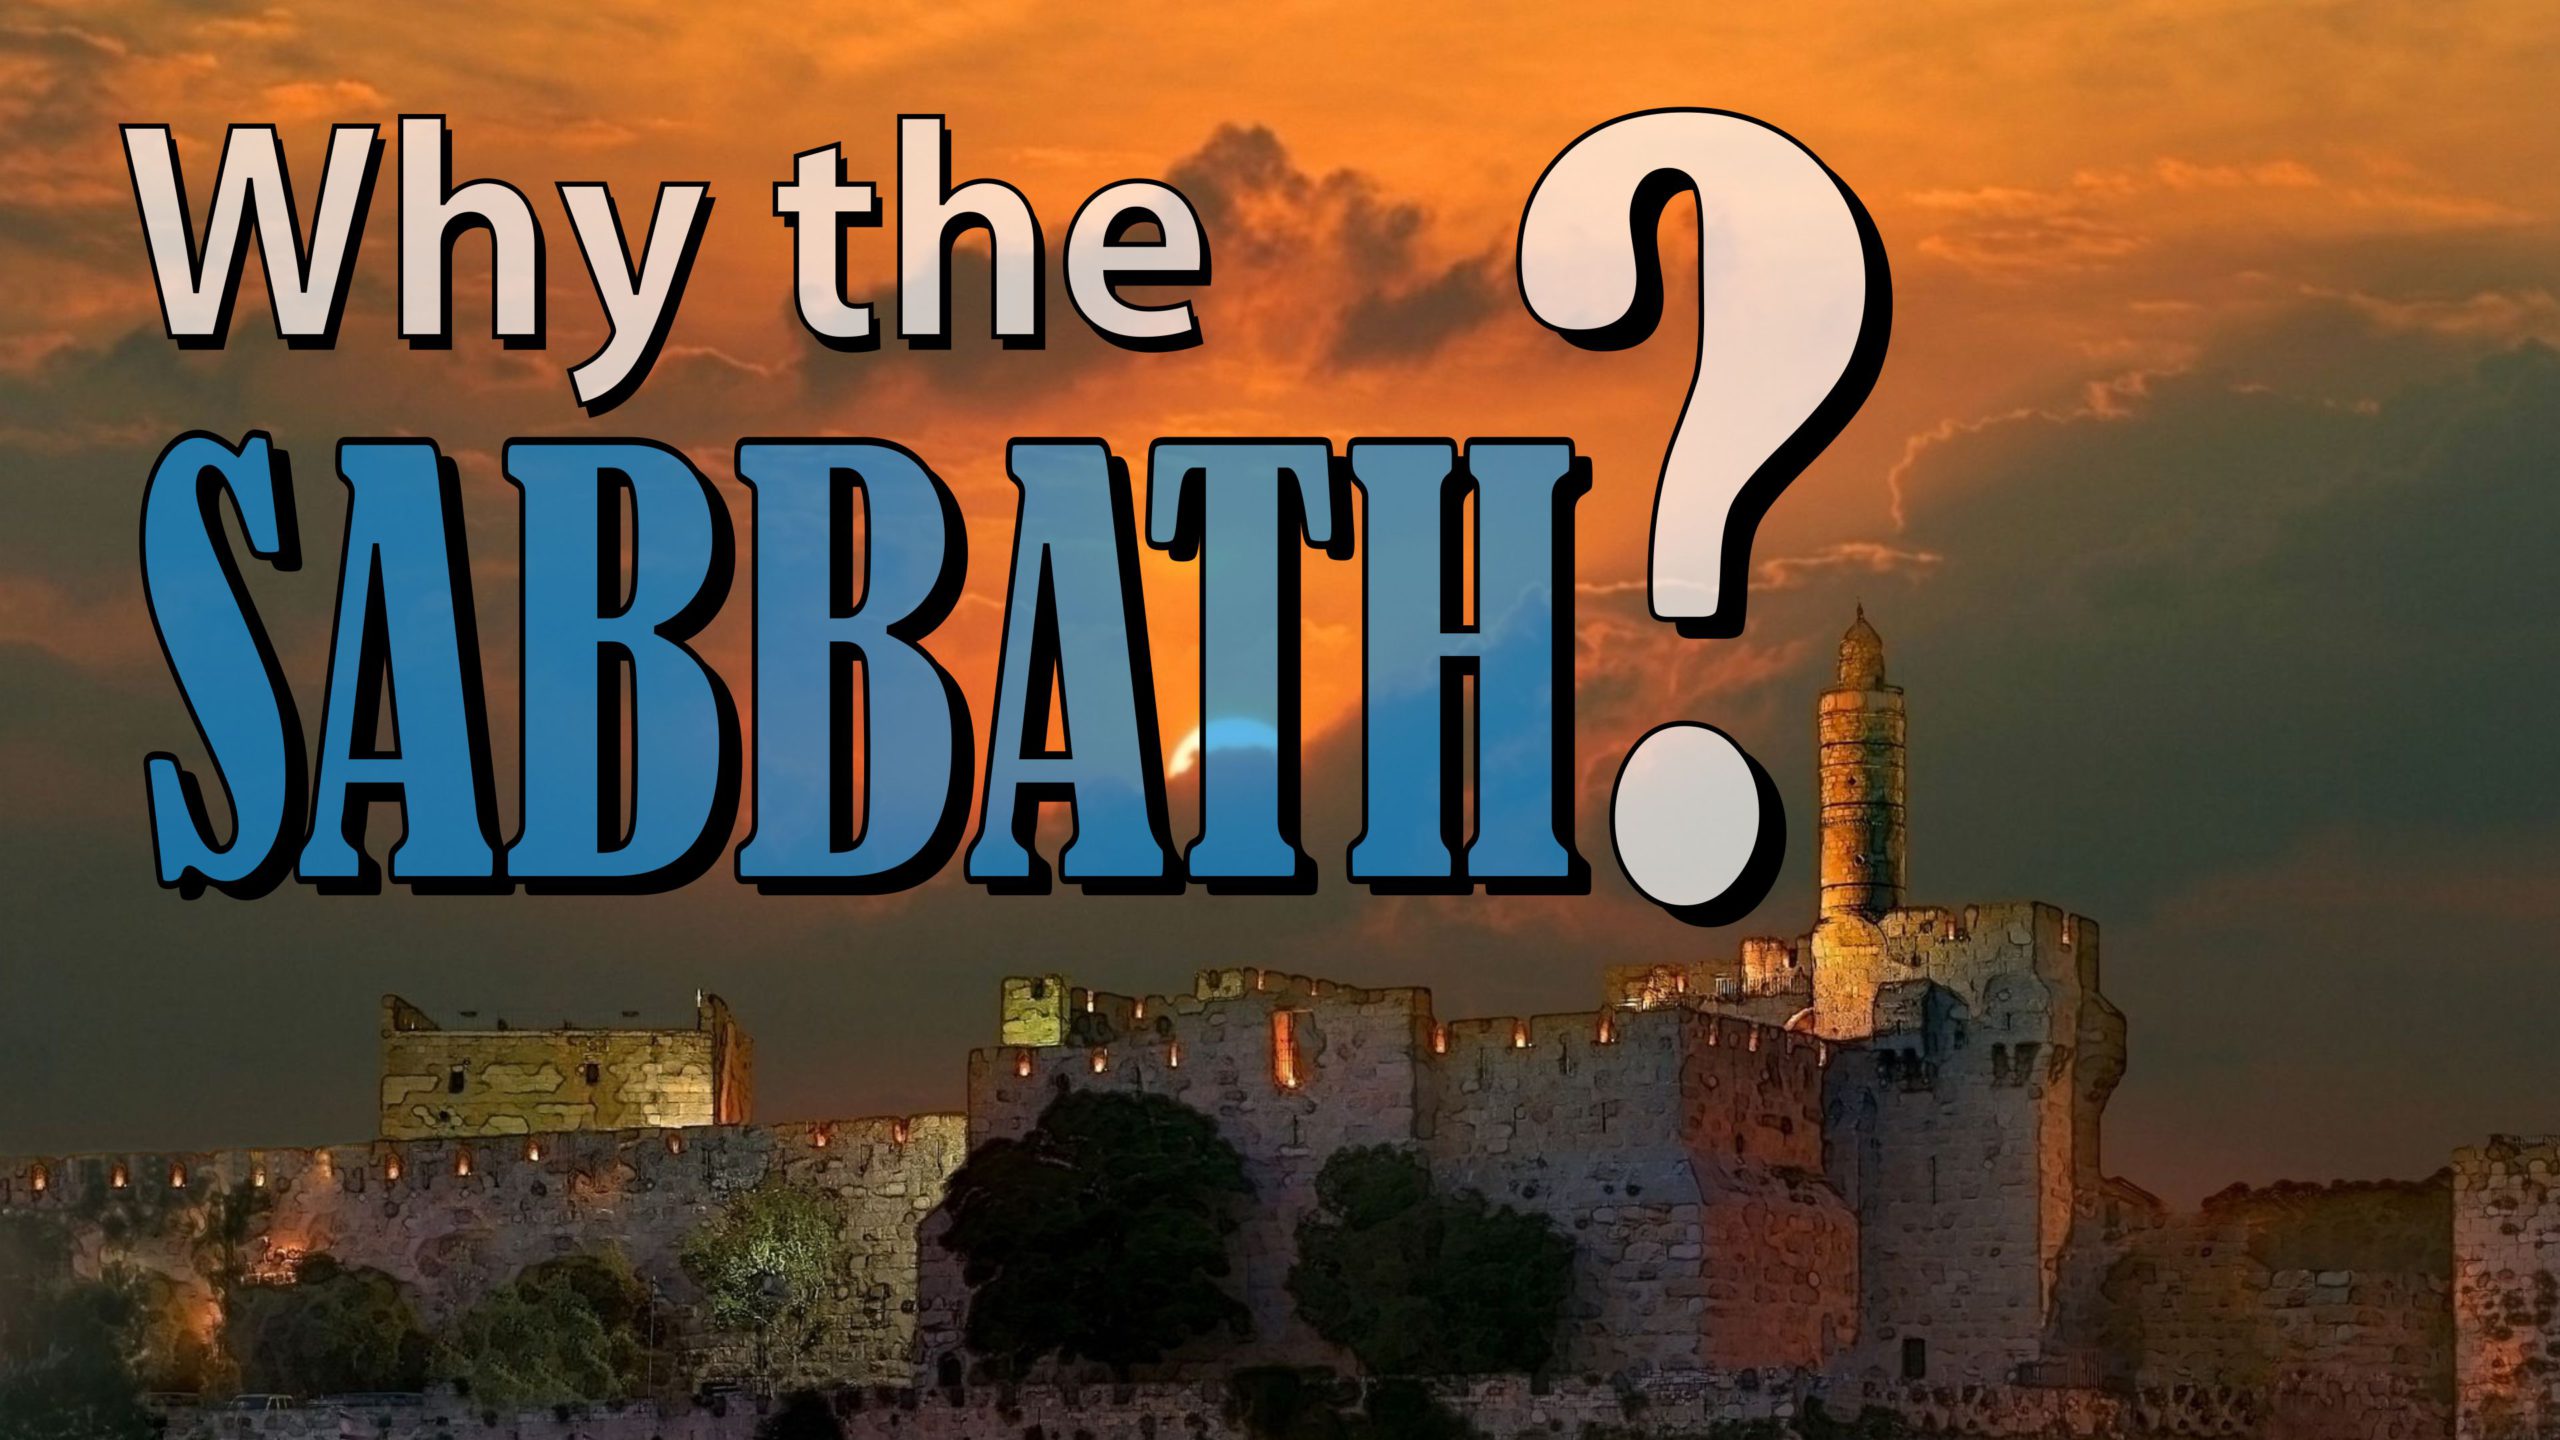 Why the Sabbath?